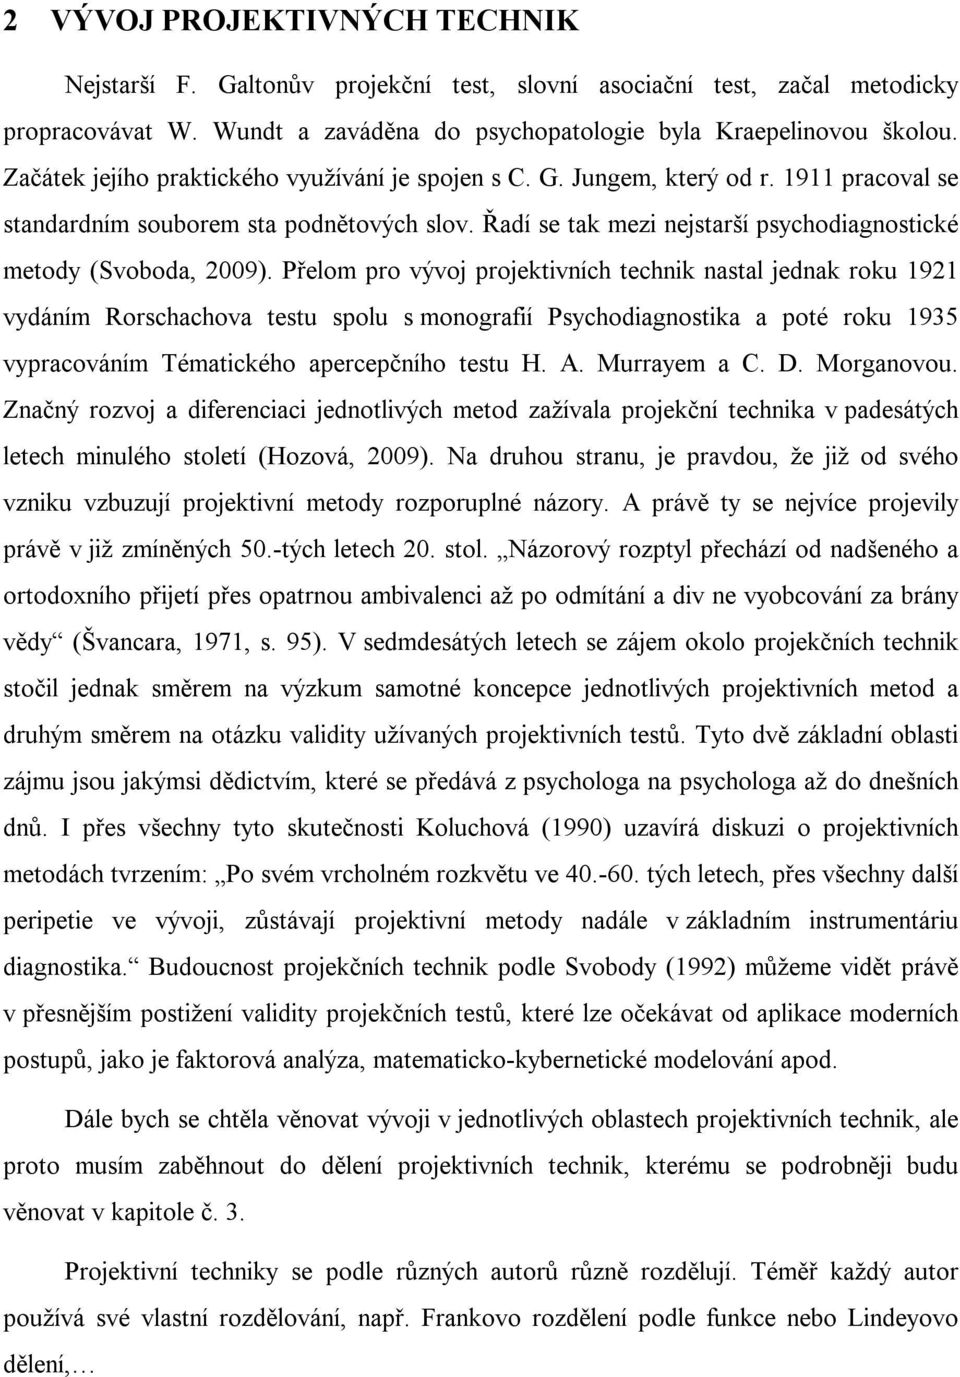 Řadí se tak mezi nejstarší psychodiagnostické metody (Svoboda, 2009).